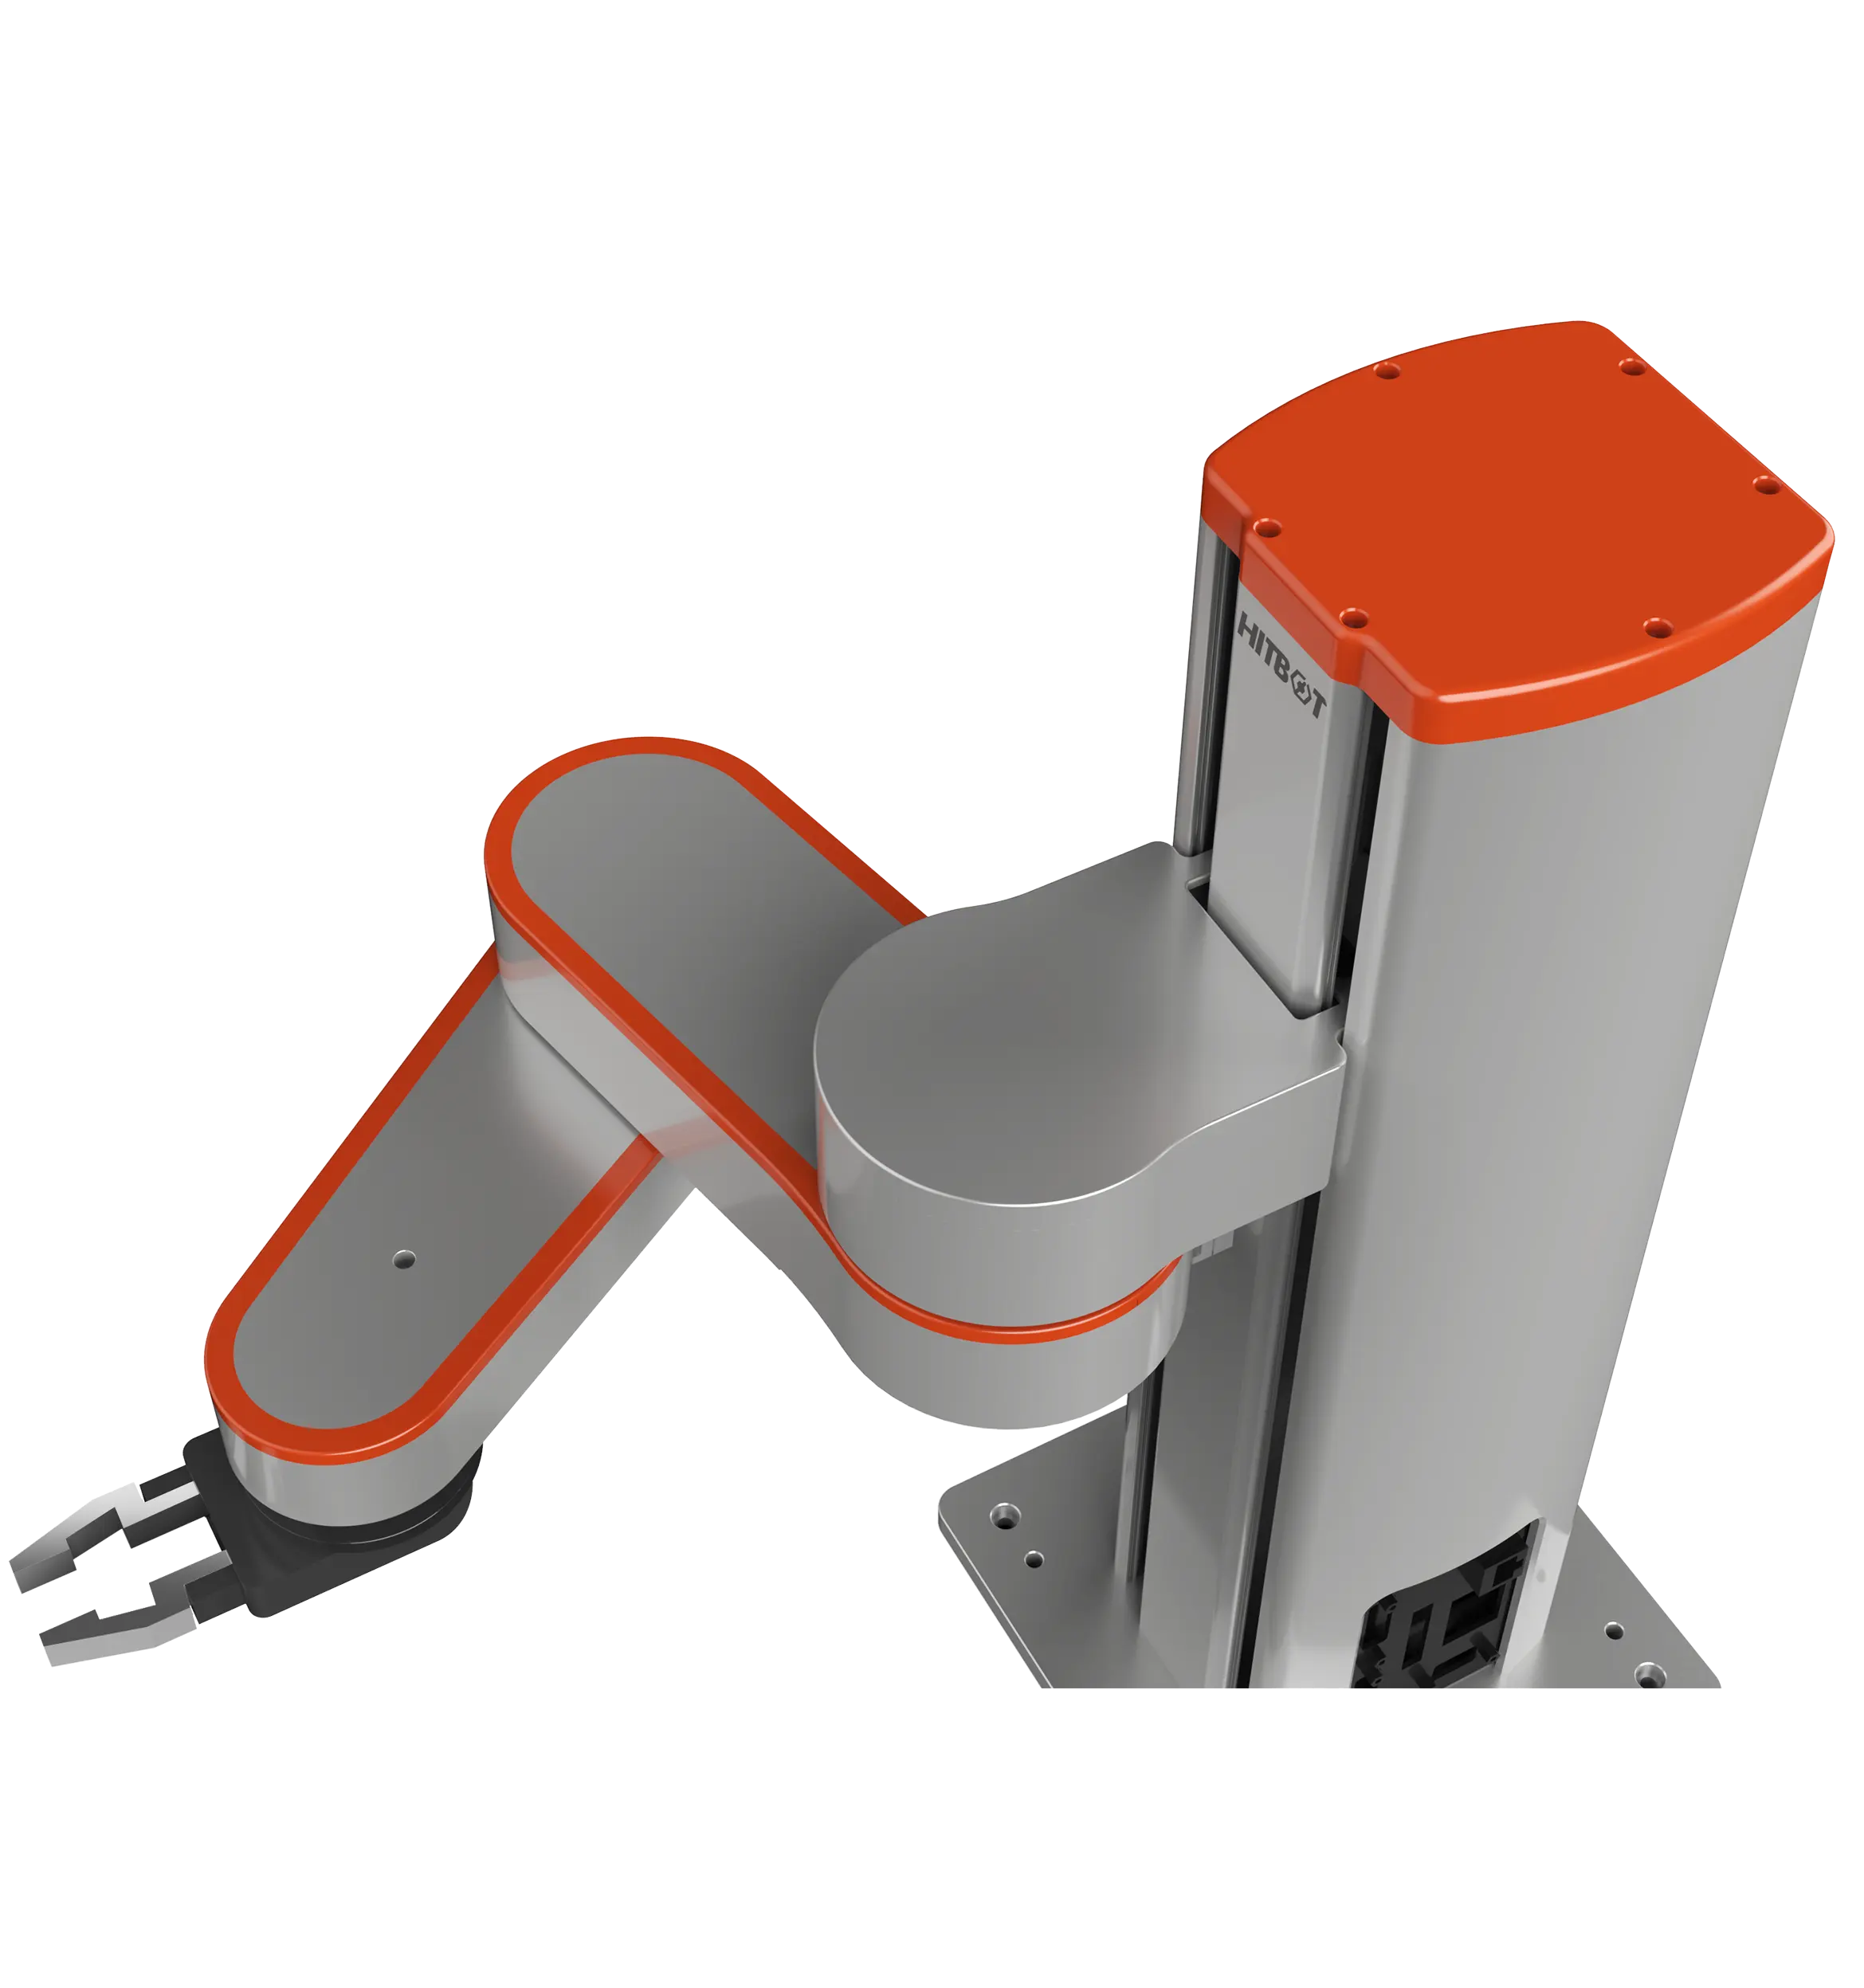 Robot comercial Arm 4 Axis HITBOT Z-Arm 1832 Robot para tienda para hacer pedidos Cámara Control de movimiento